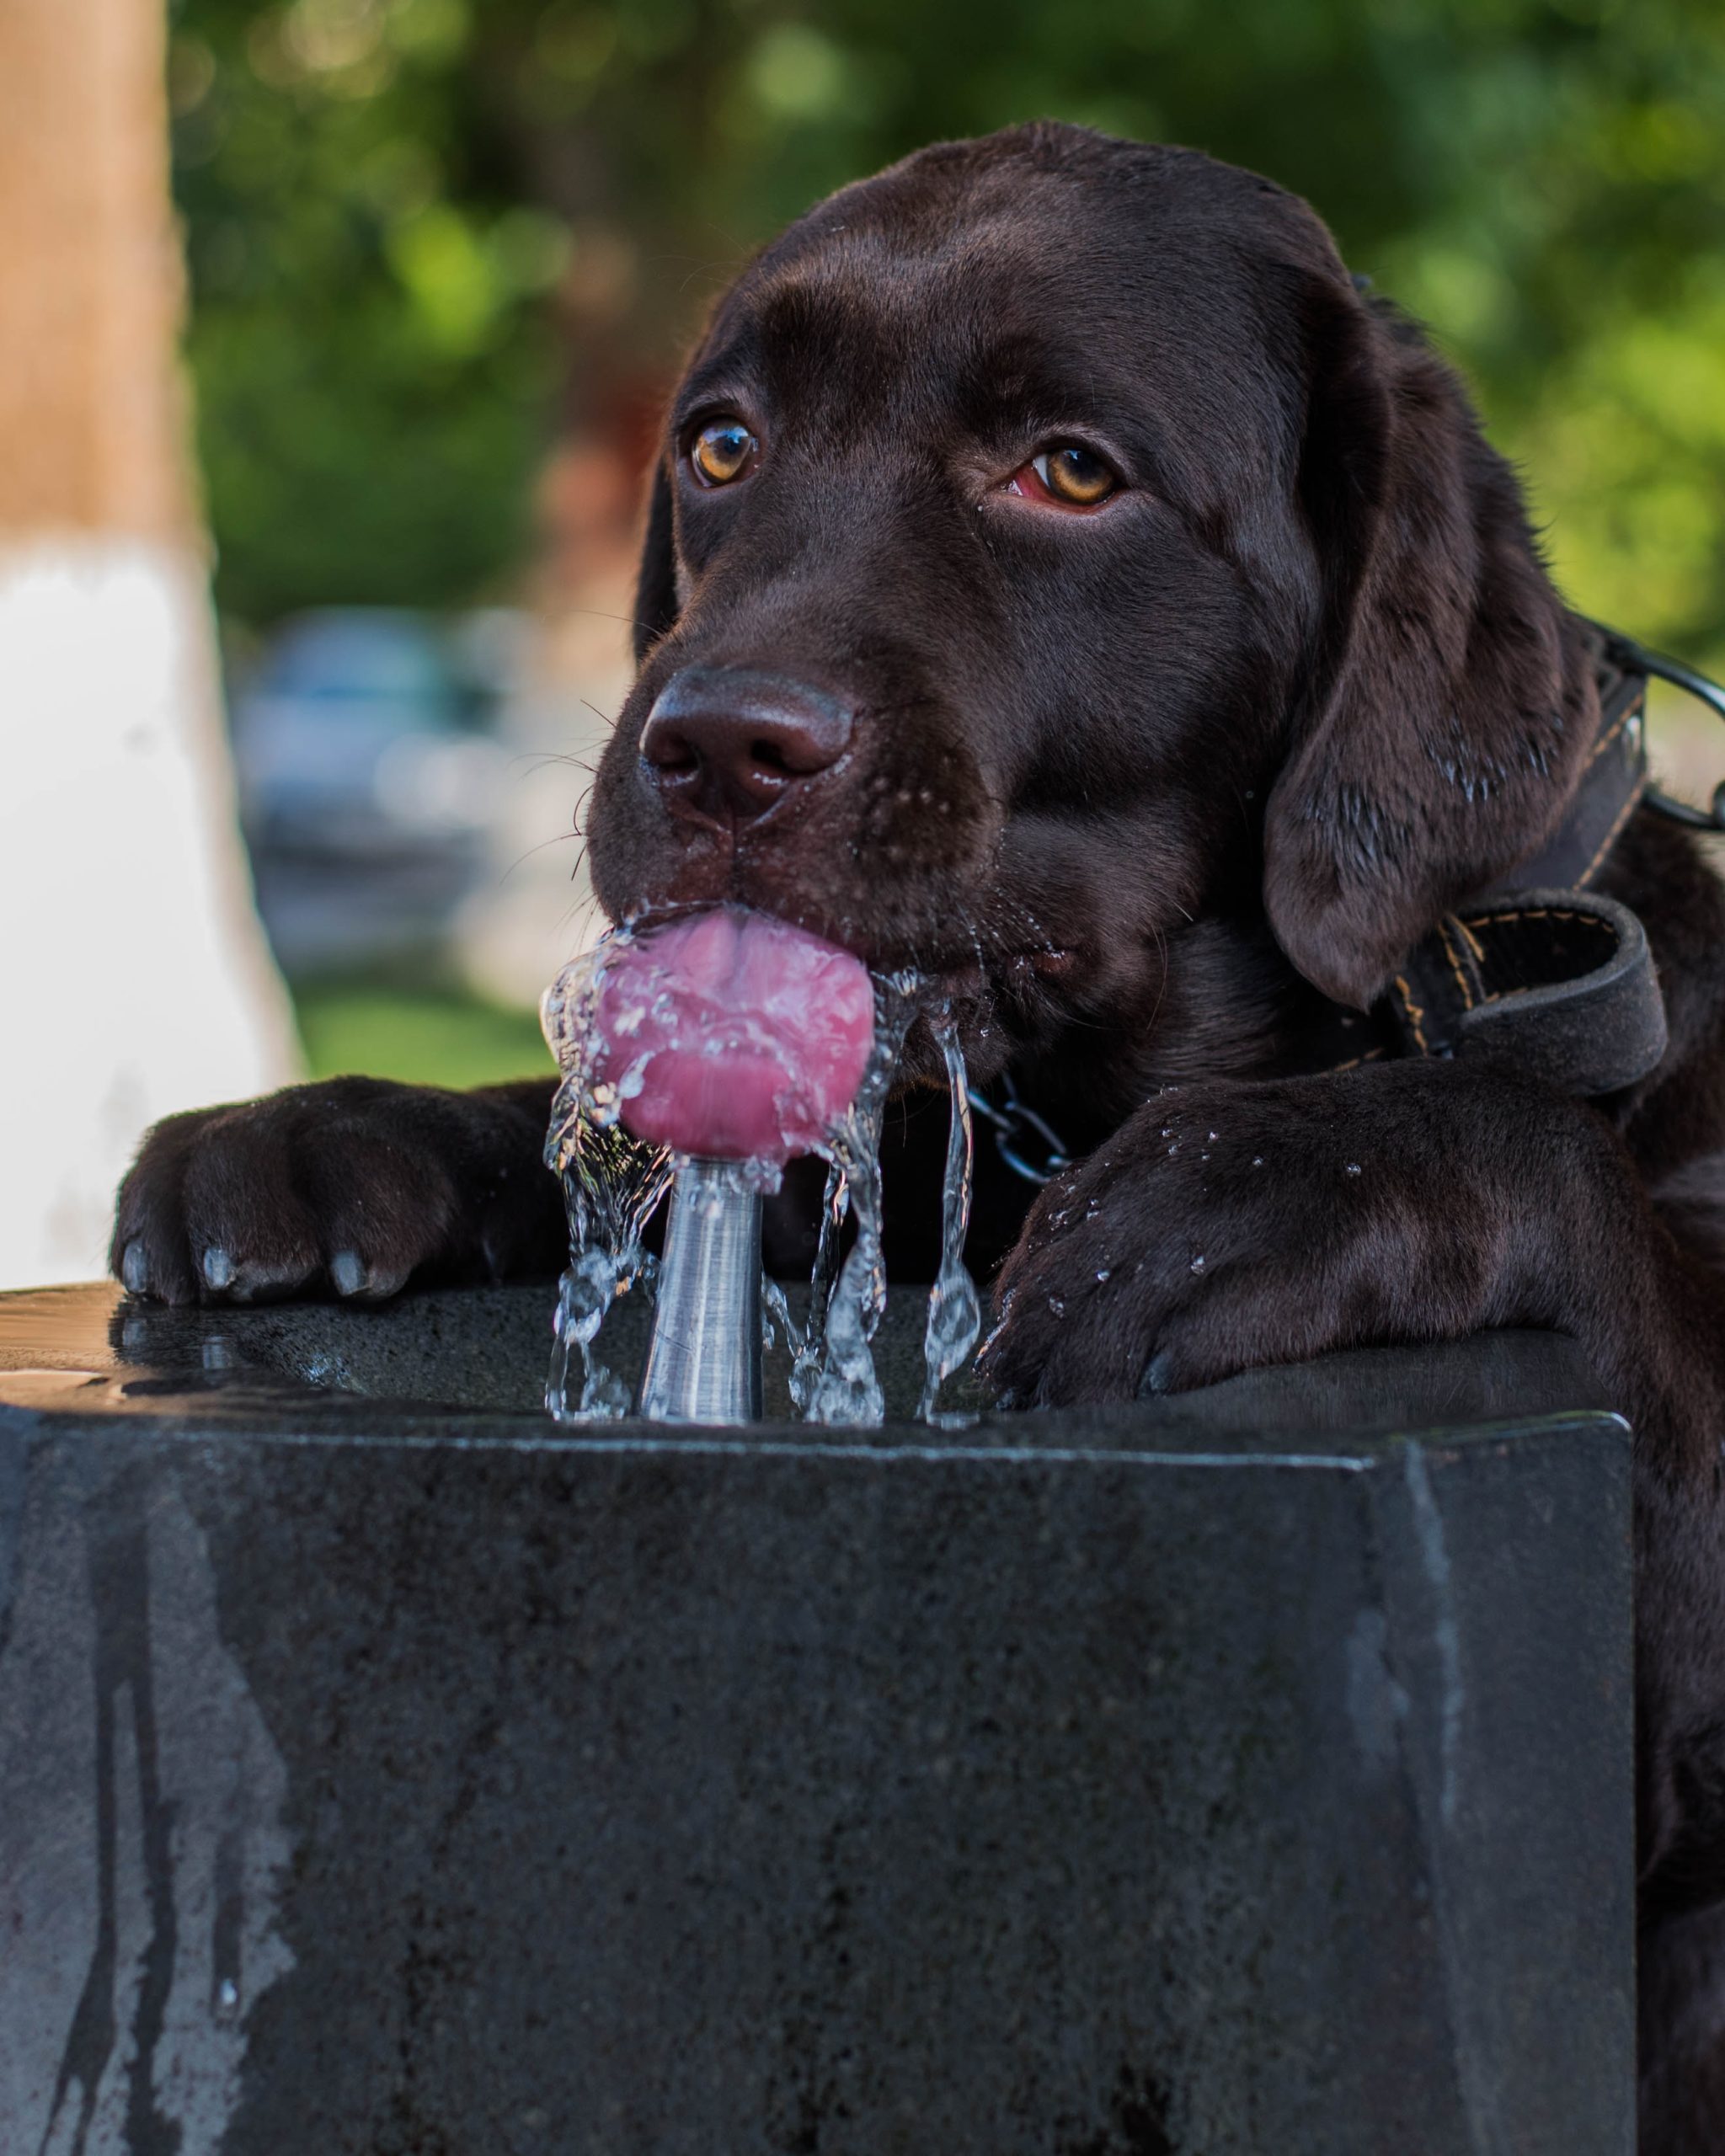 Foto ilustrativa sobre el golpe de calor en las mascotas como perros y gatos. Aparece un perro bebiendo agua en una fuente pública, en la calle.